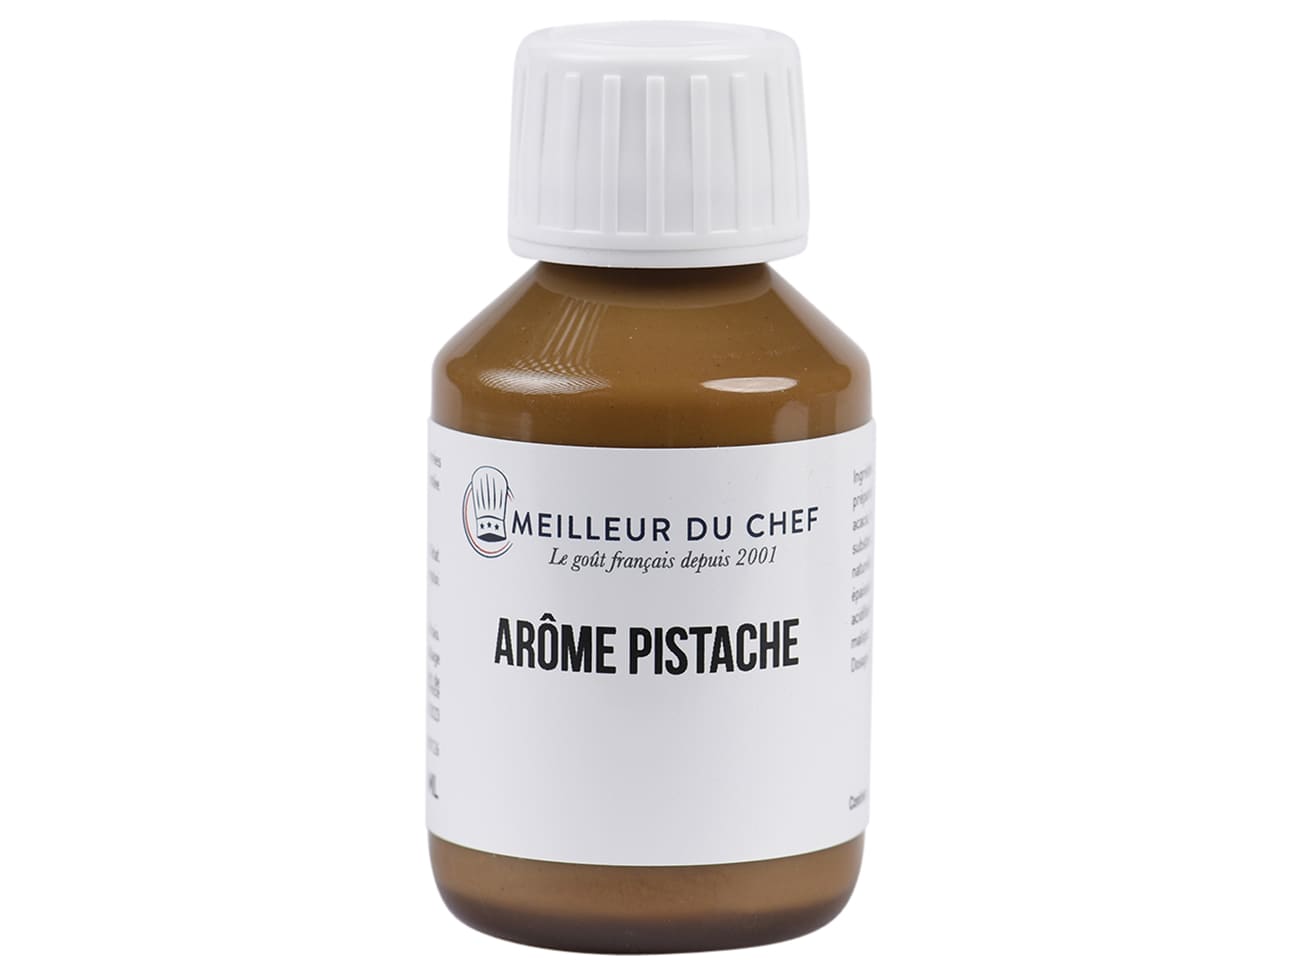 Arôme Pistache